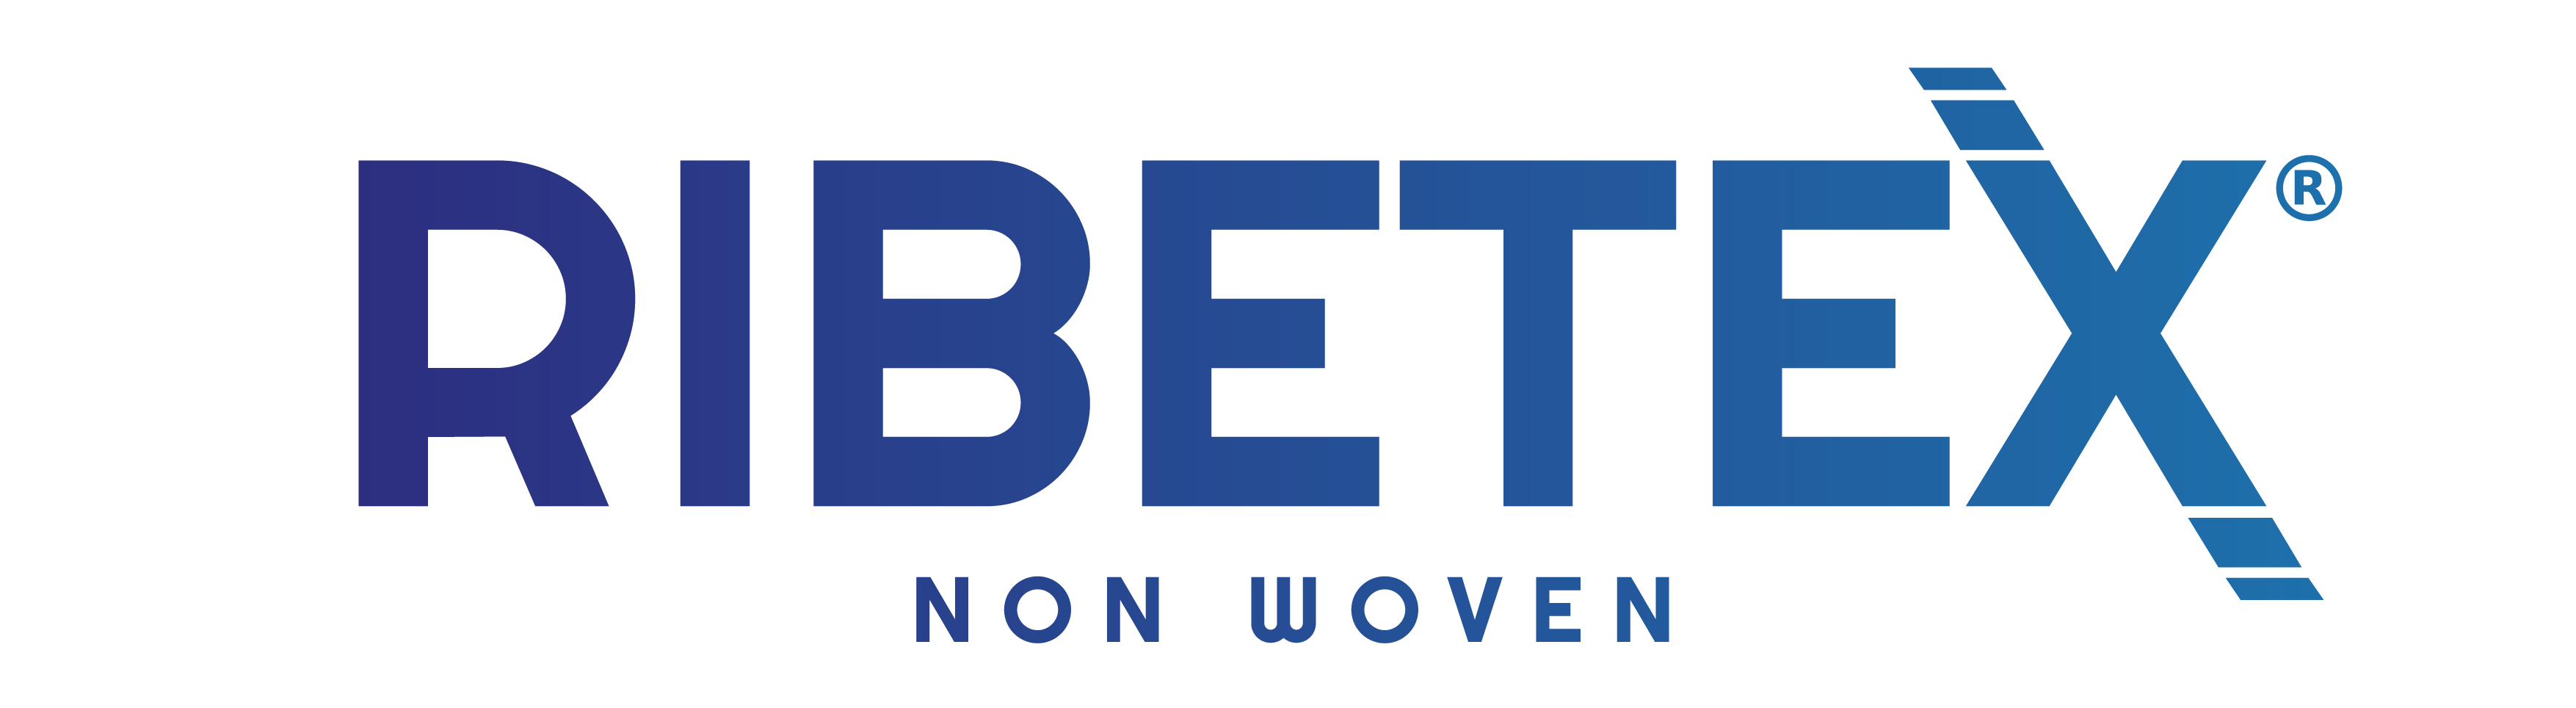 Logos RIBETEX